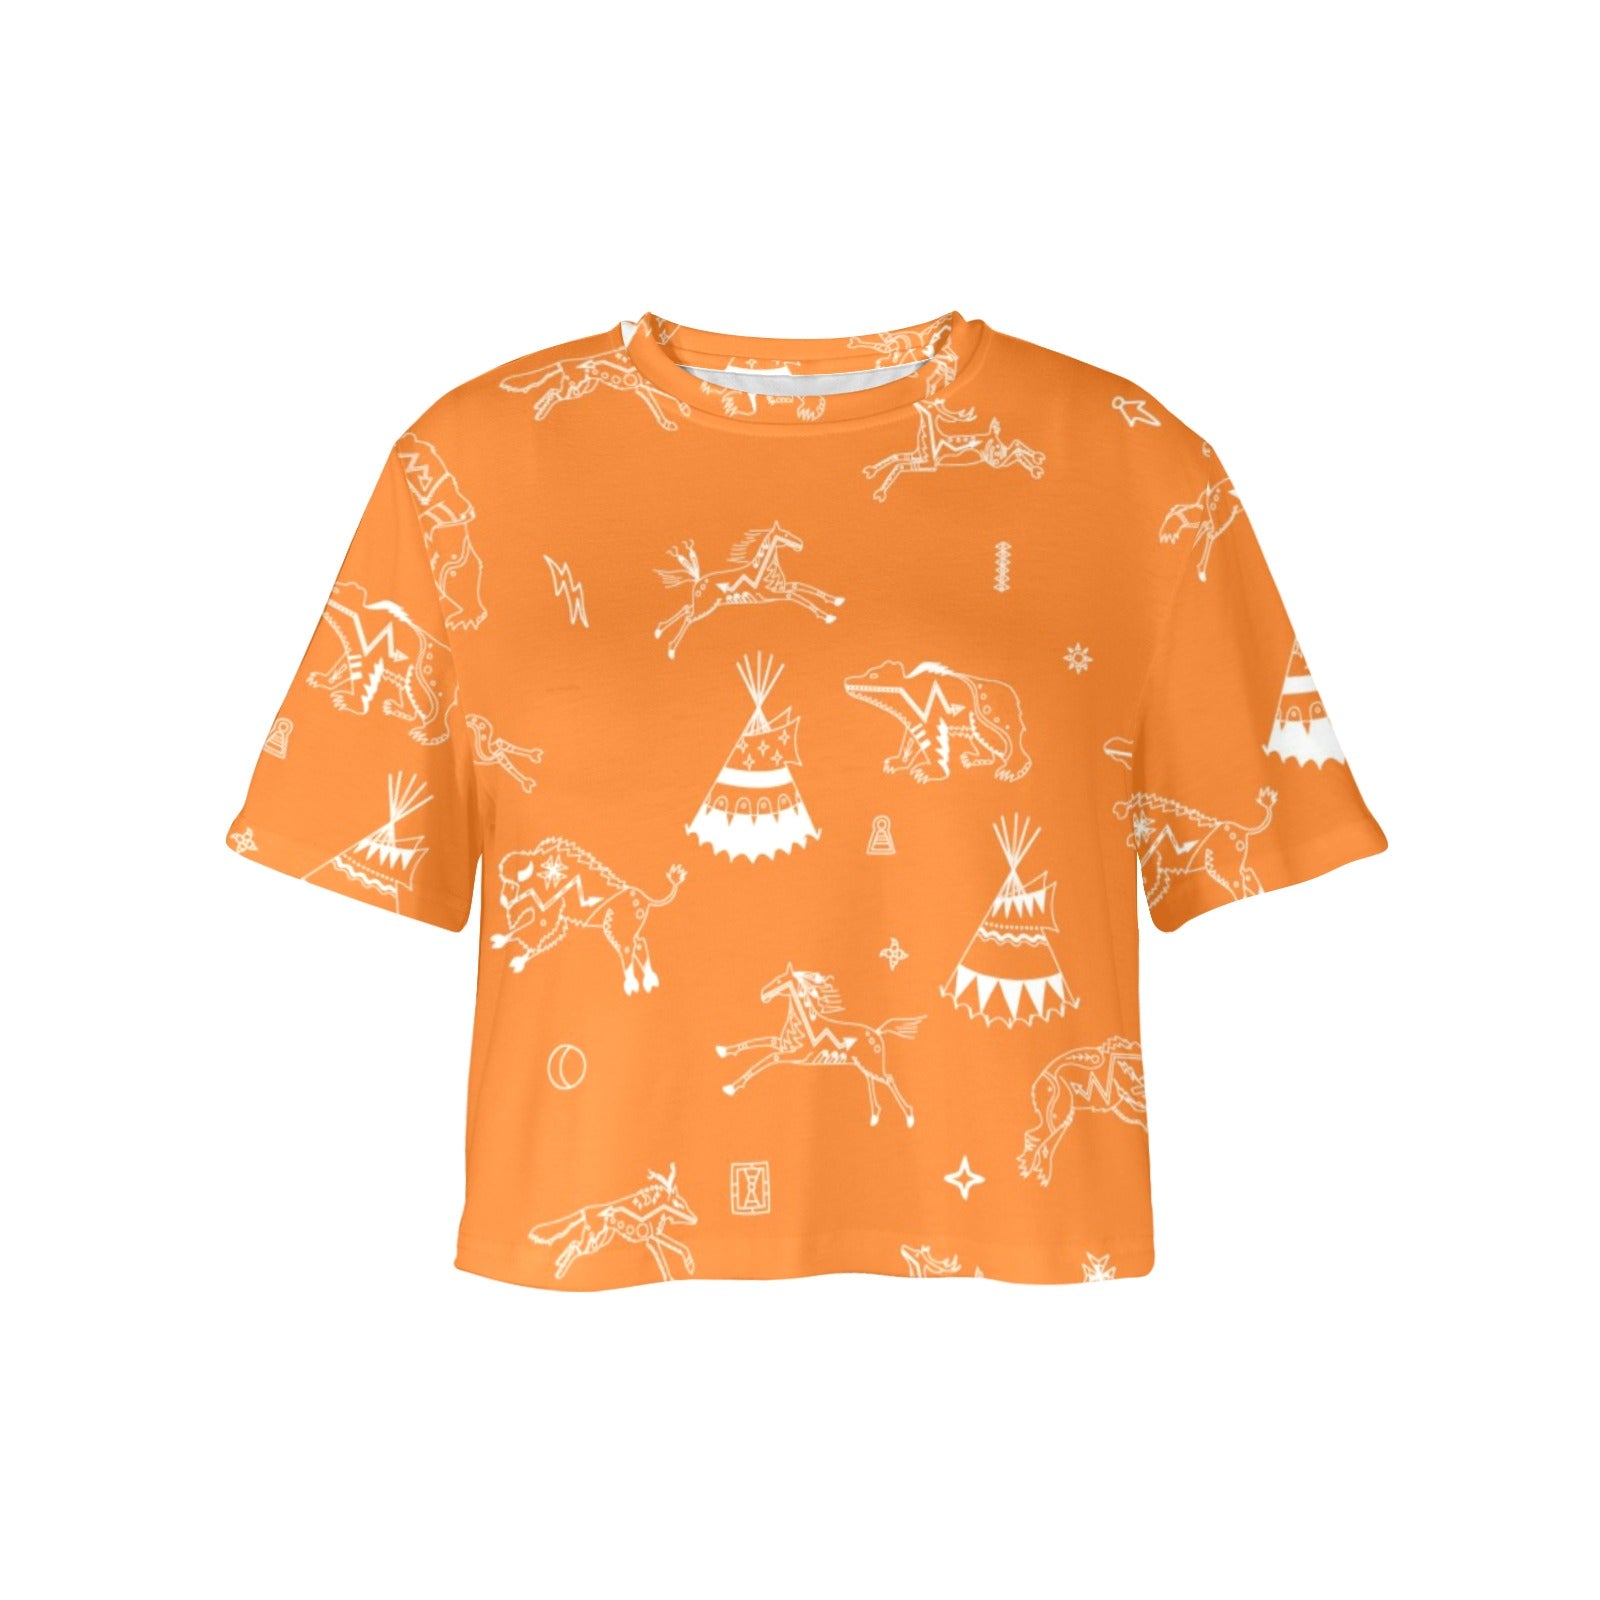 Ledger Dables Orange Women's Cropped T-shirt